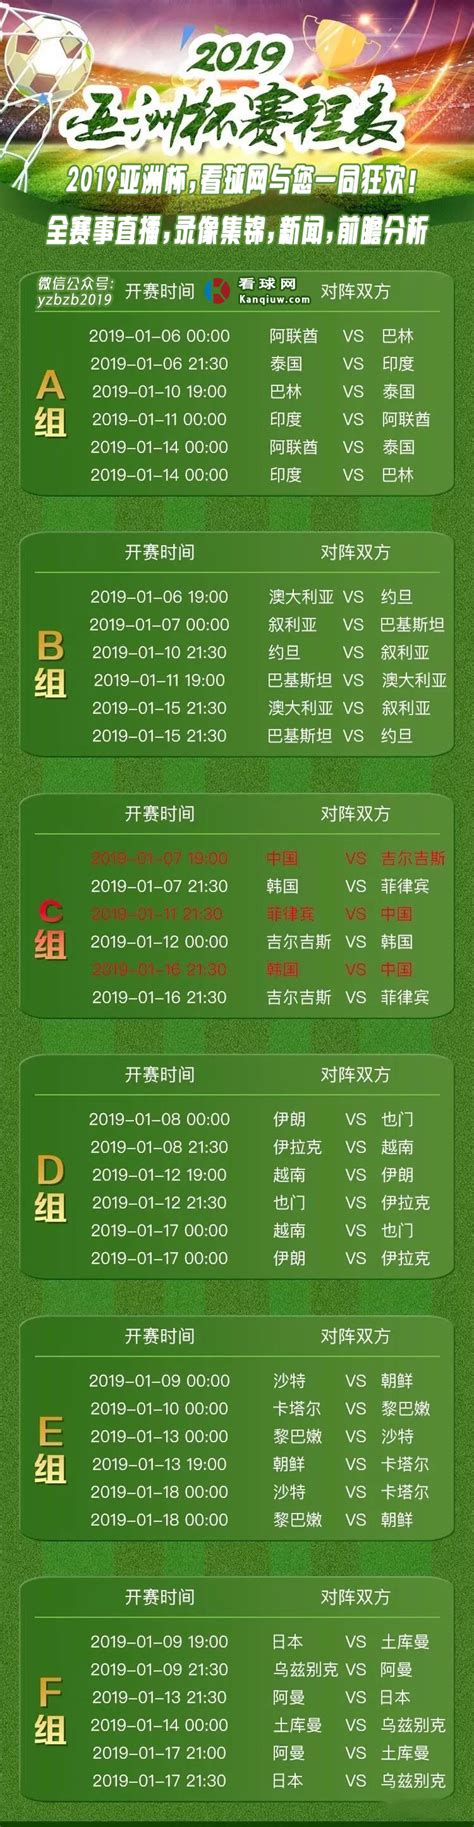 中国男足比赛日程表